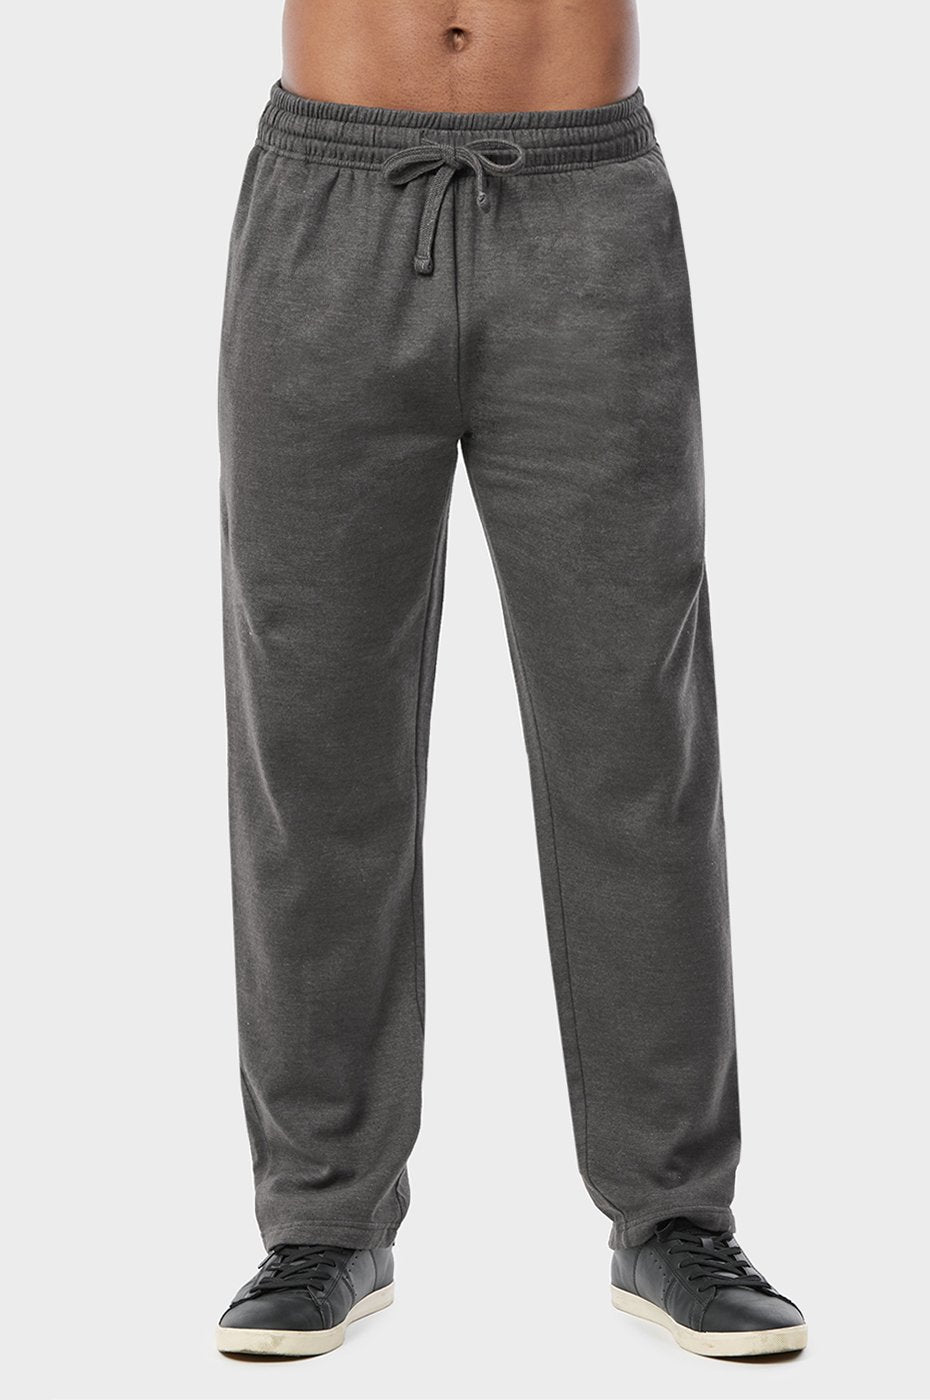 Men's Essentials Knocker Solid Long Fleece Sweat Pants - Charcoal Gray (SP1010_CGY)